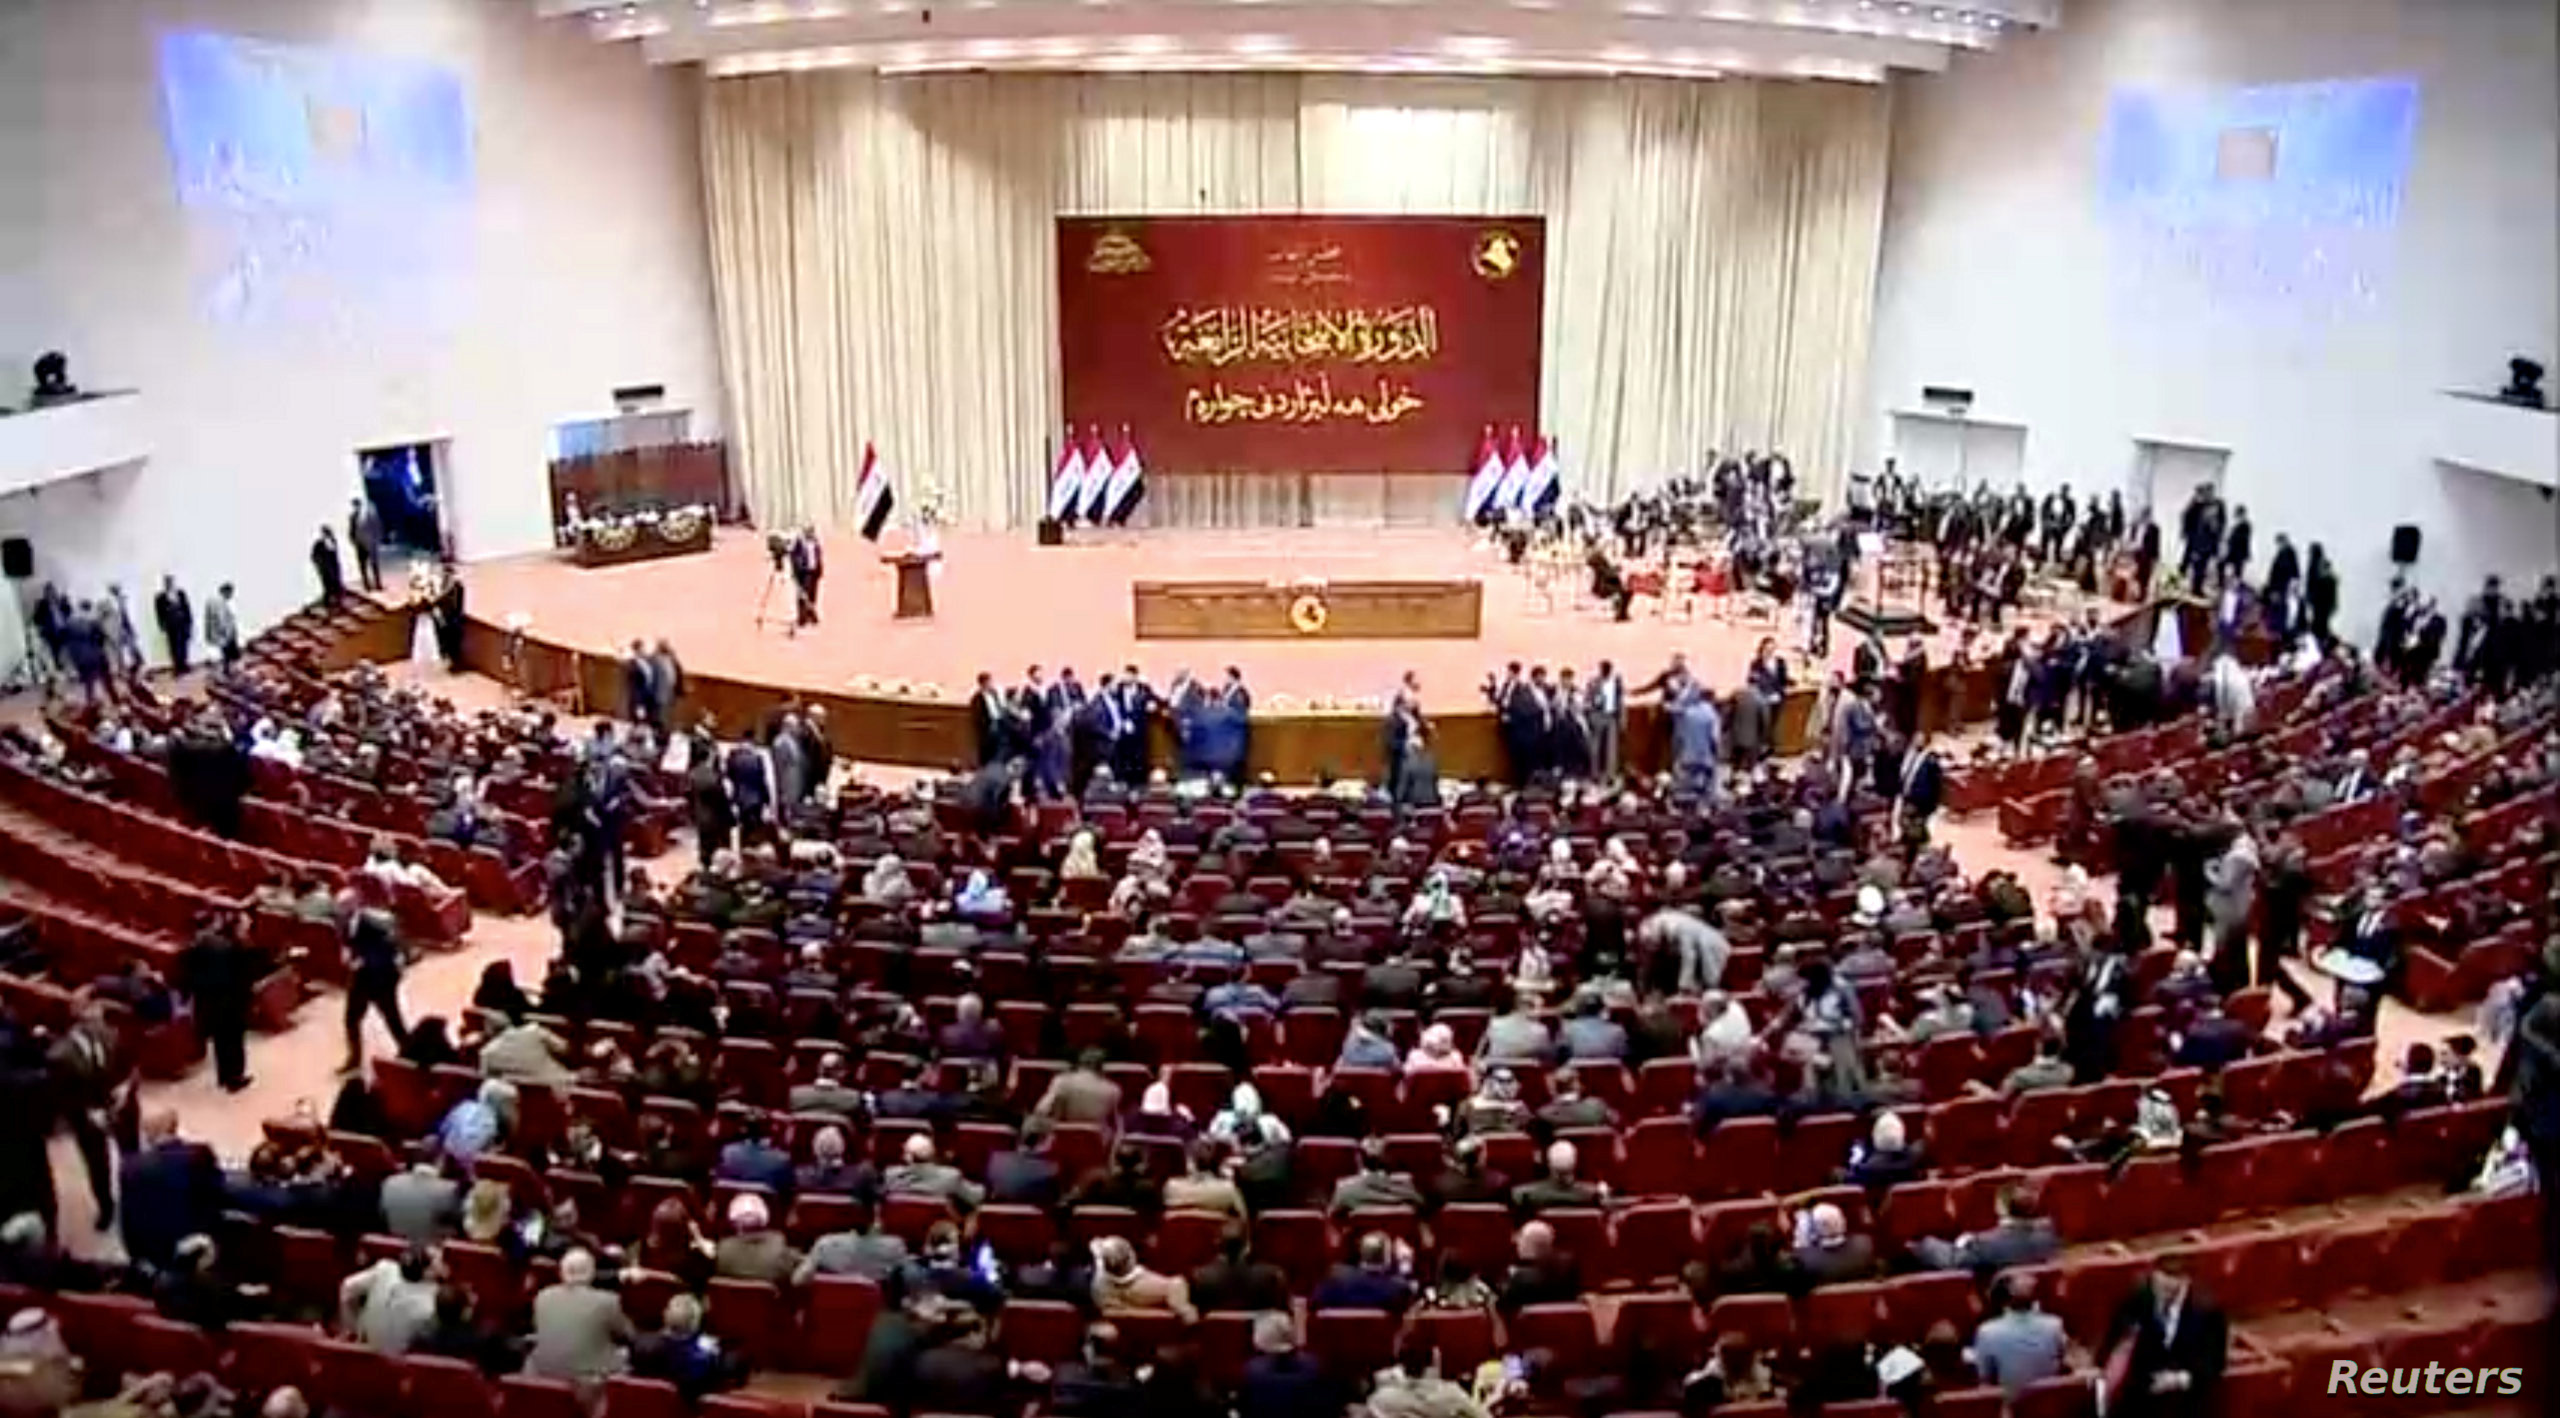 البرلمان العراقي يعقد الأسبوع الحالي جلسة لمنح الثقة لحكومة الكاظمي - بوابة  الشروق - نسخة الموبايل